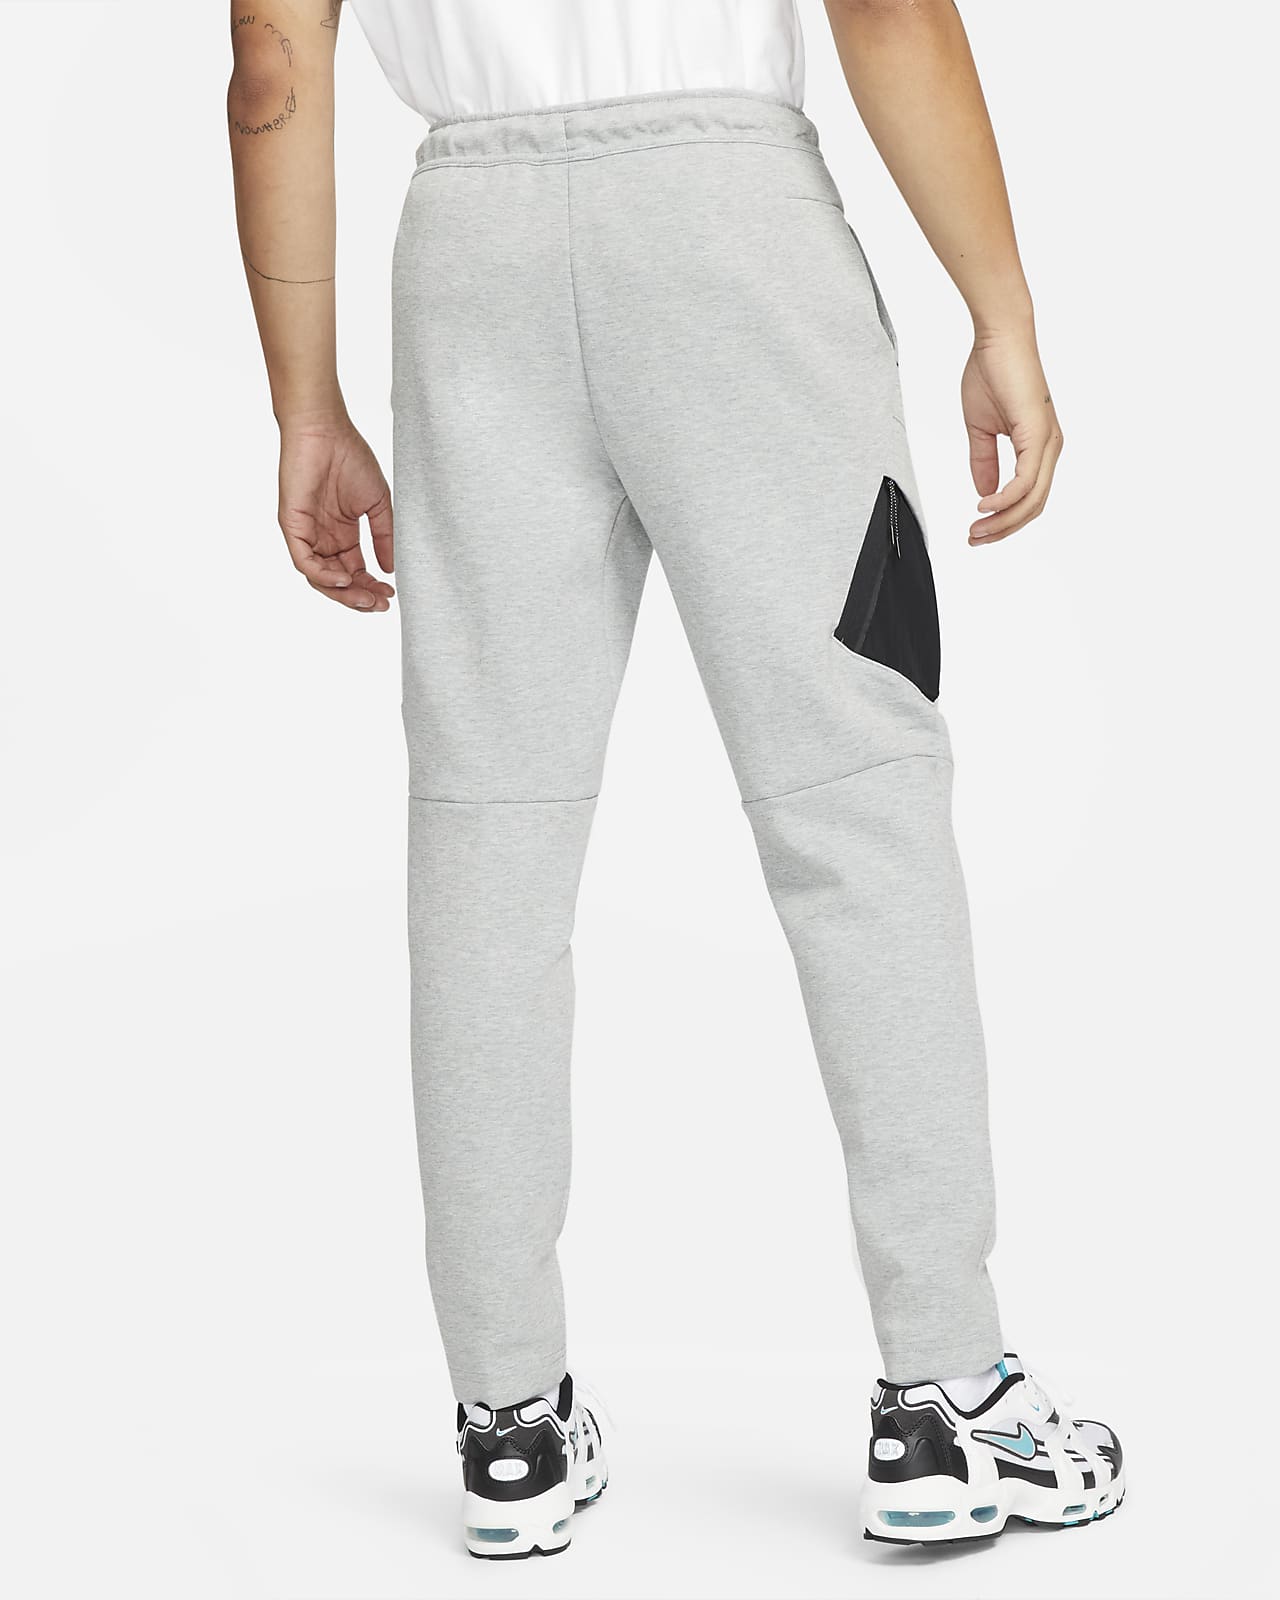 liberal Larva del moscardón Exceder Pantalones cargo para hombre Nike Sportswear Tech Fleece. Nike.com